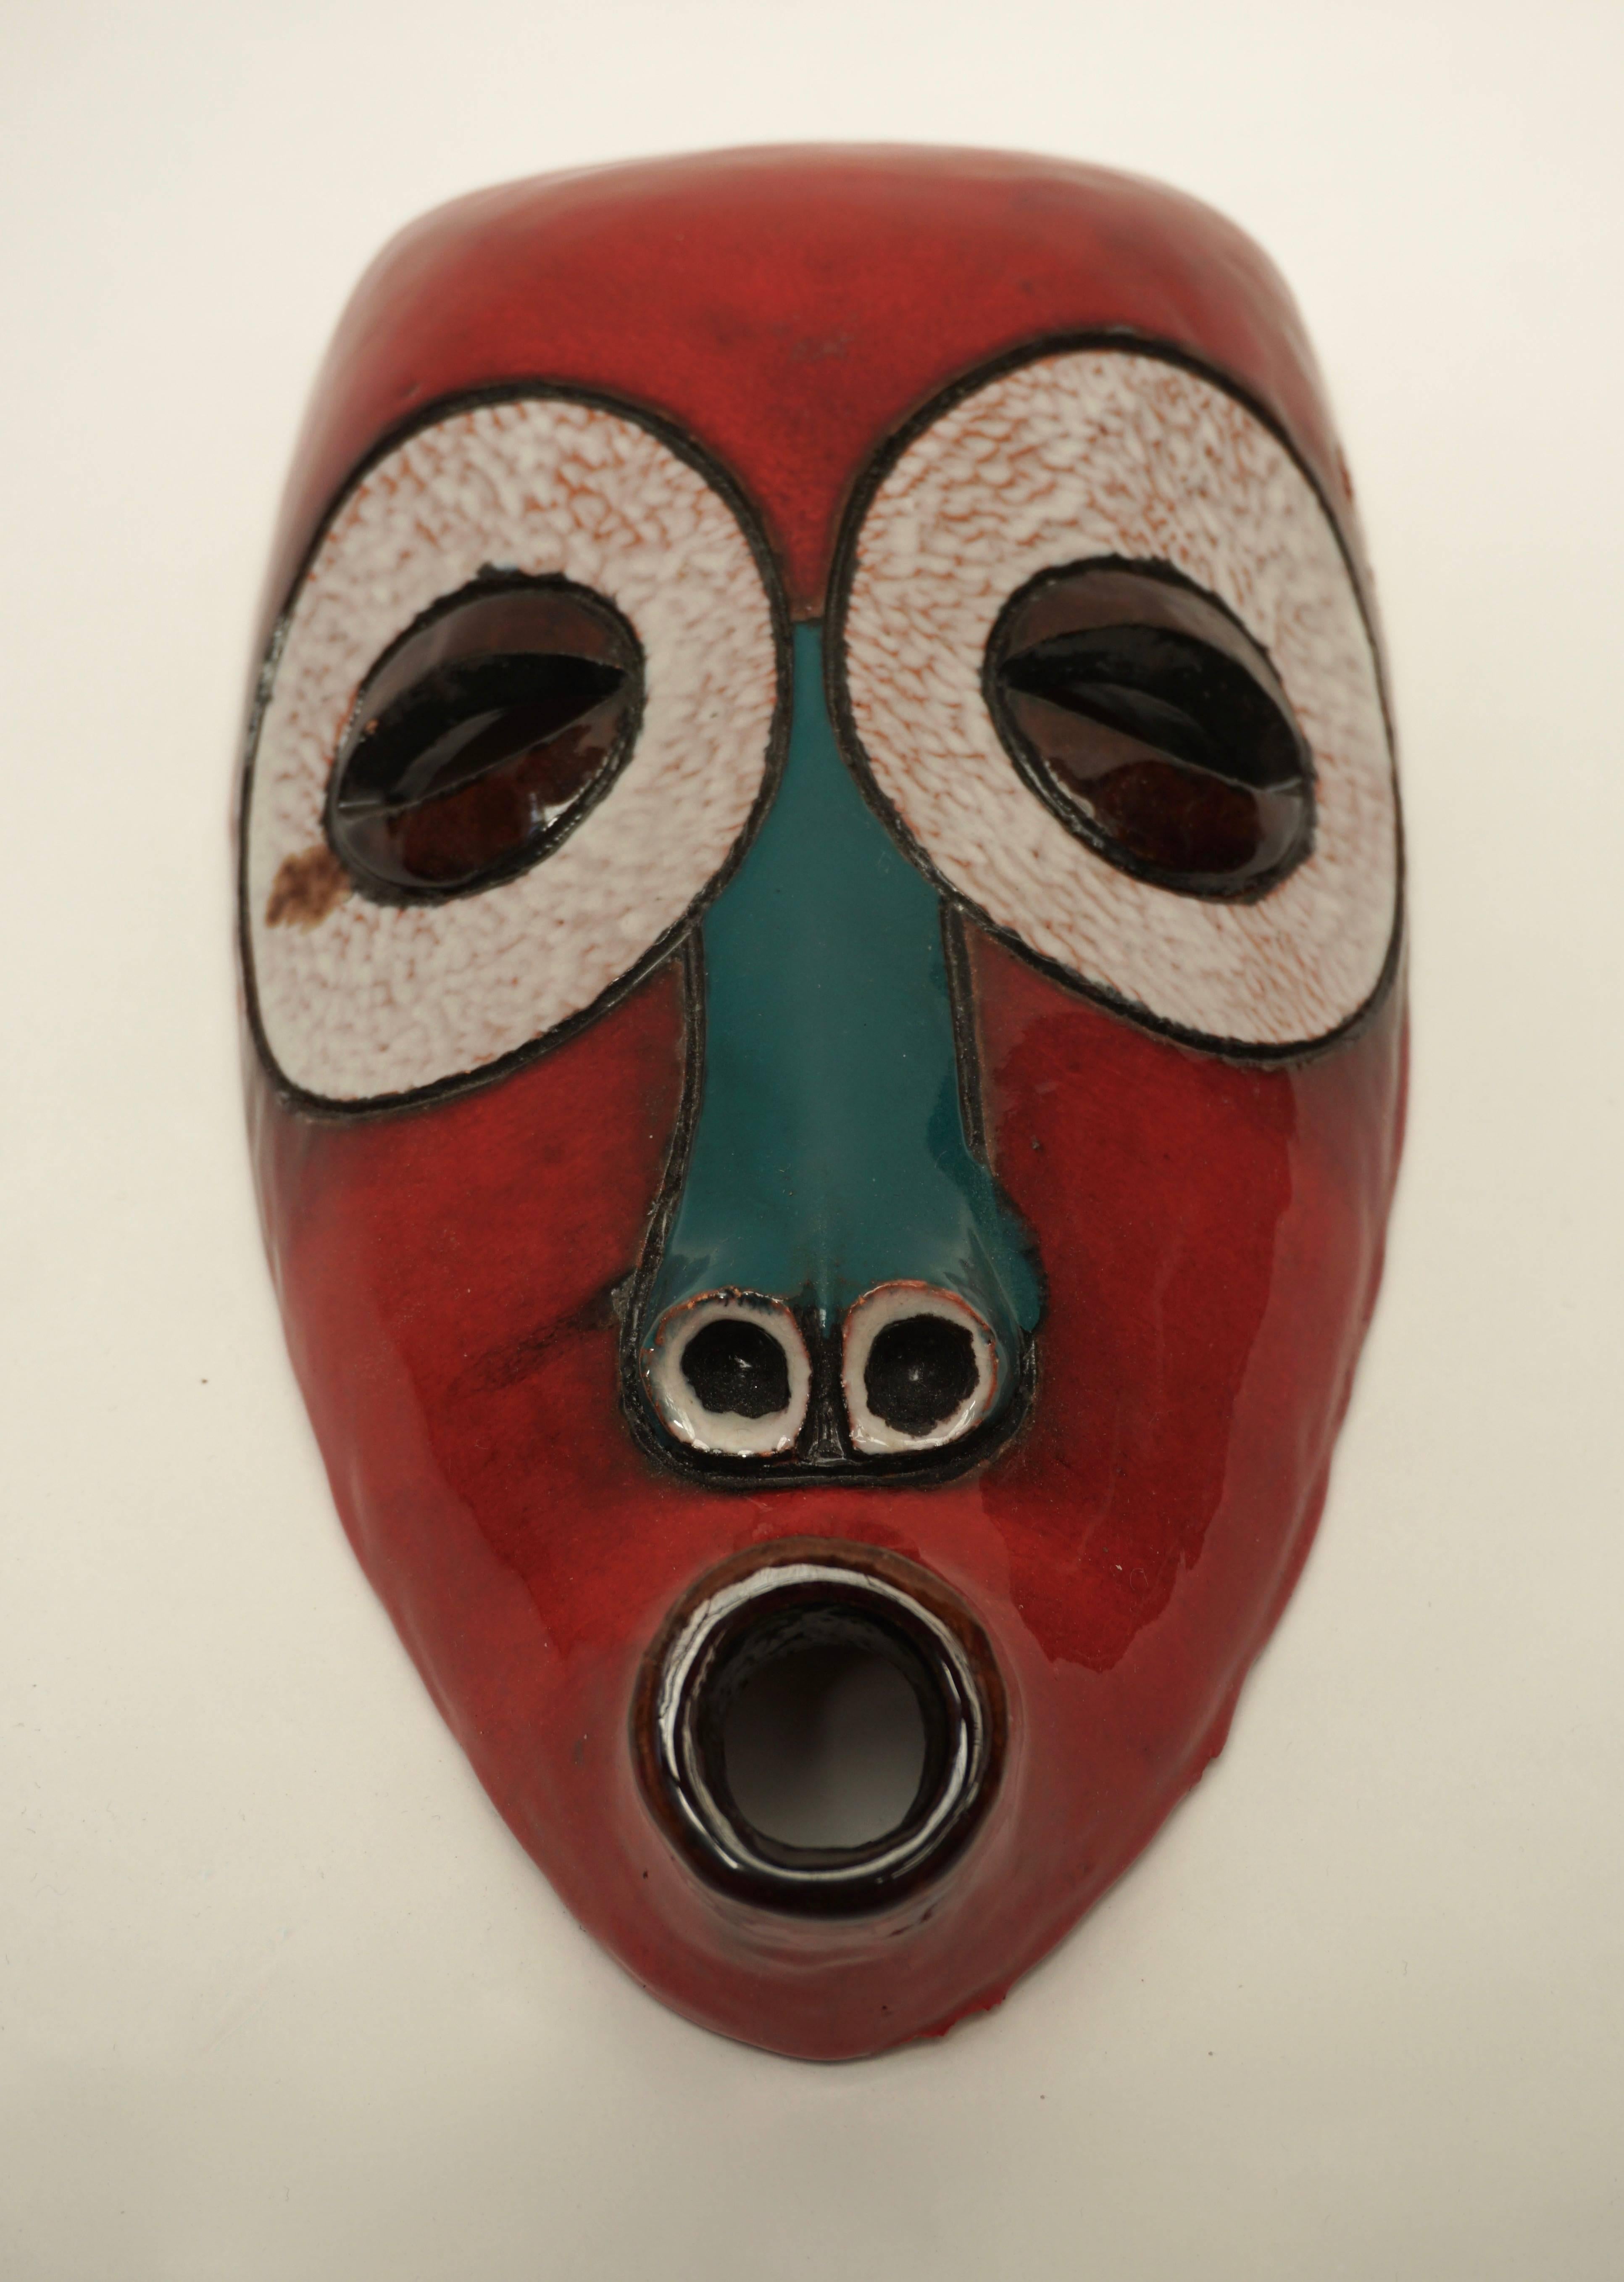 Masque en céramique, Bakou Ghana.
Signé : AT Manteto, Bakou 1974.
Mesures : Hauteur 32 cm.
Largeur 17 cm.
Profondeur 8 cm.